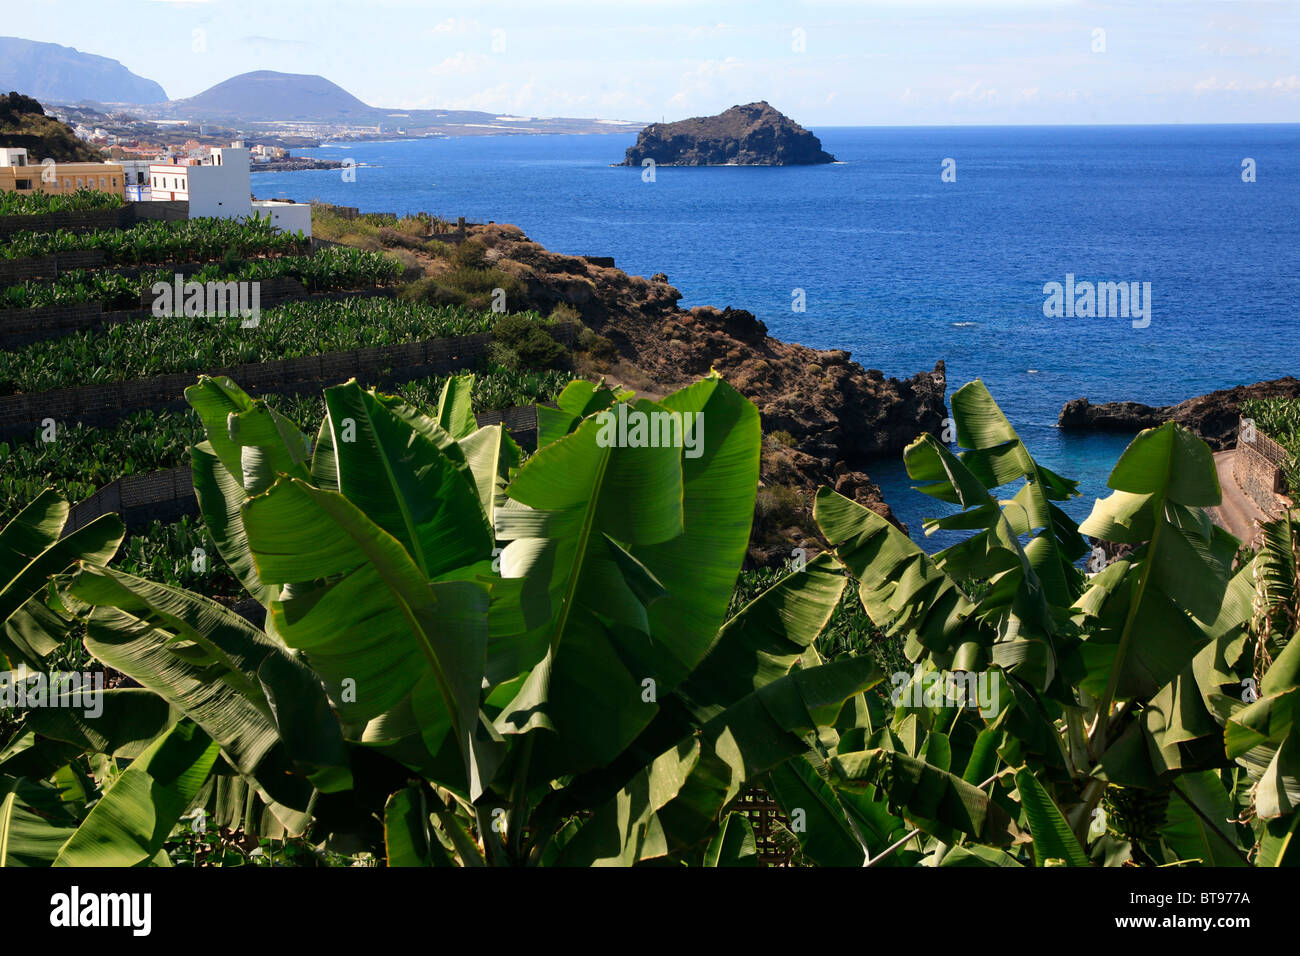 Banana plantation on the Atlantic Ocean, Tenerife, Canary Islands, Spain, Europe Stock Photo